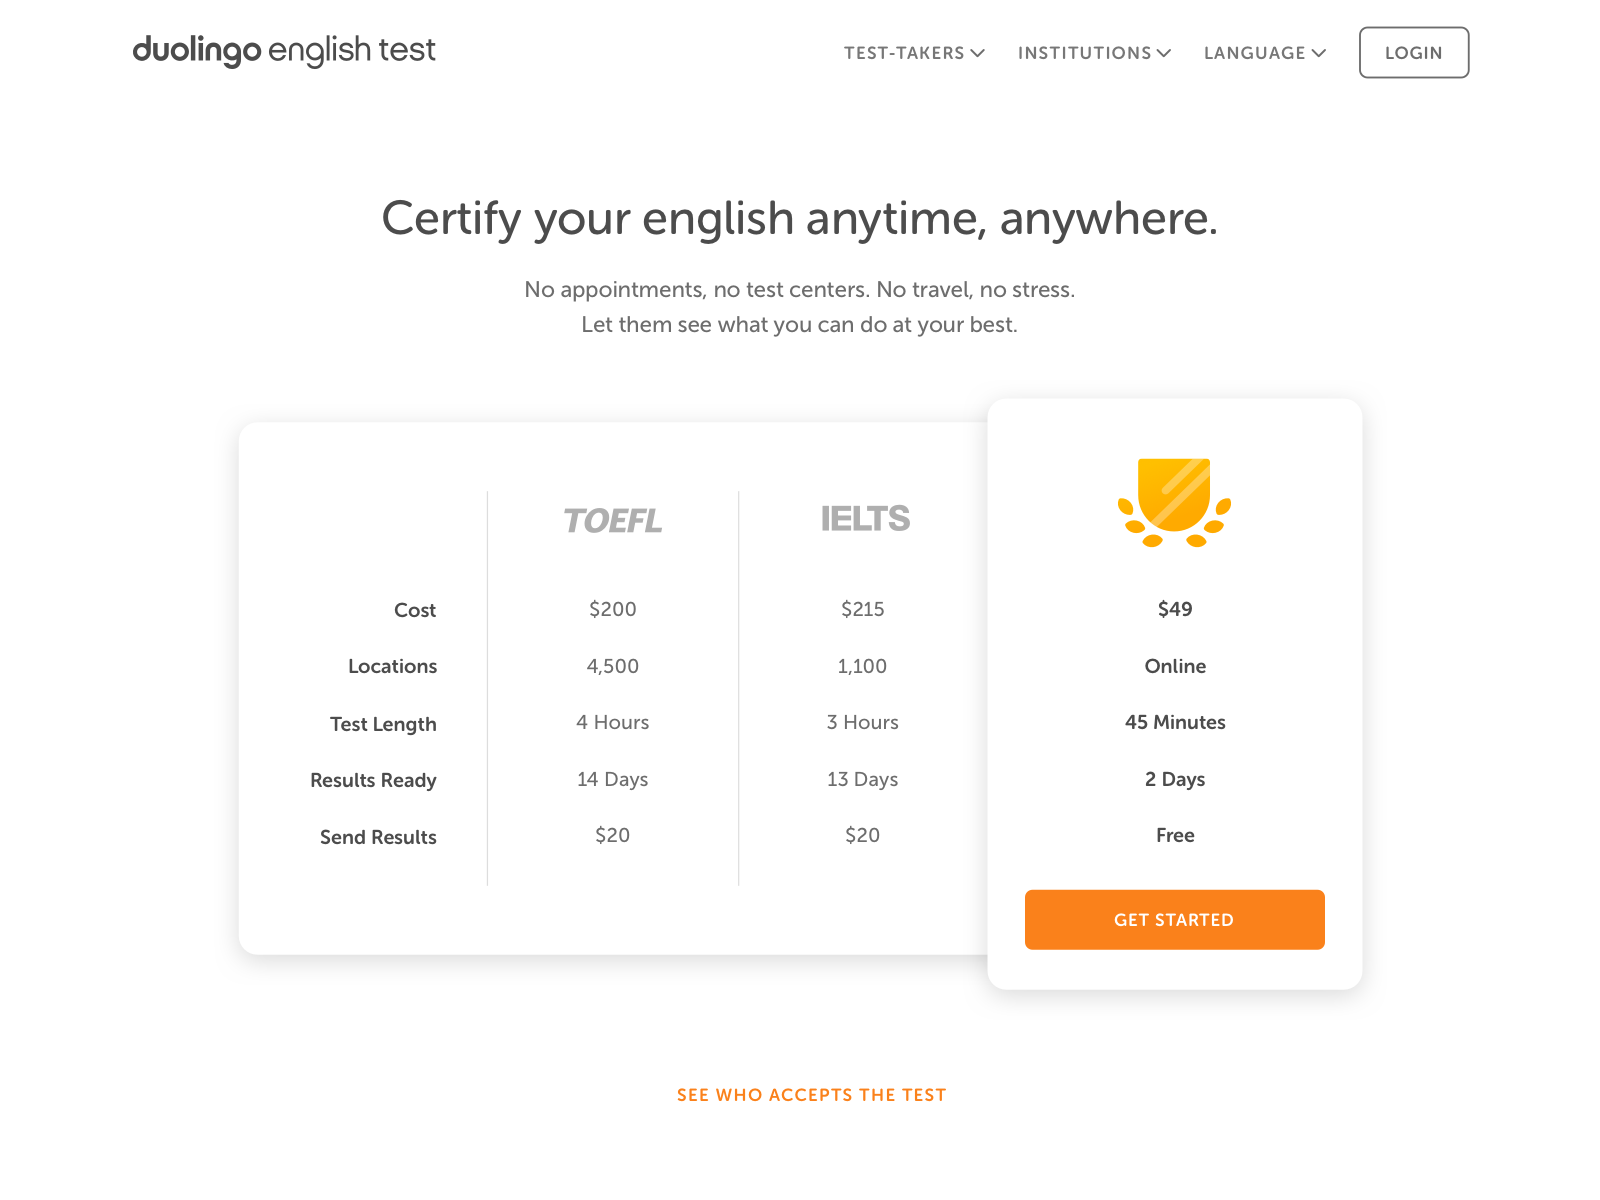 duolingo test of english